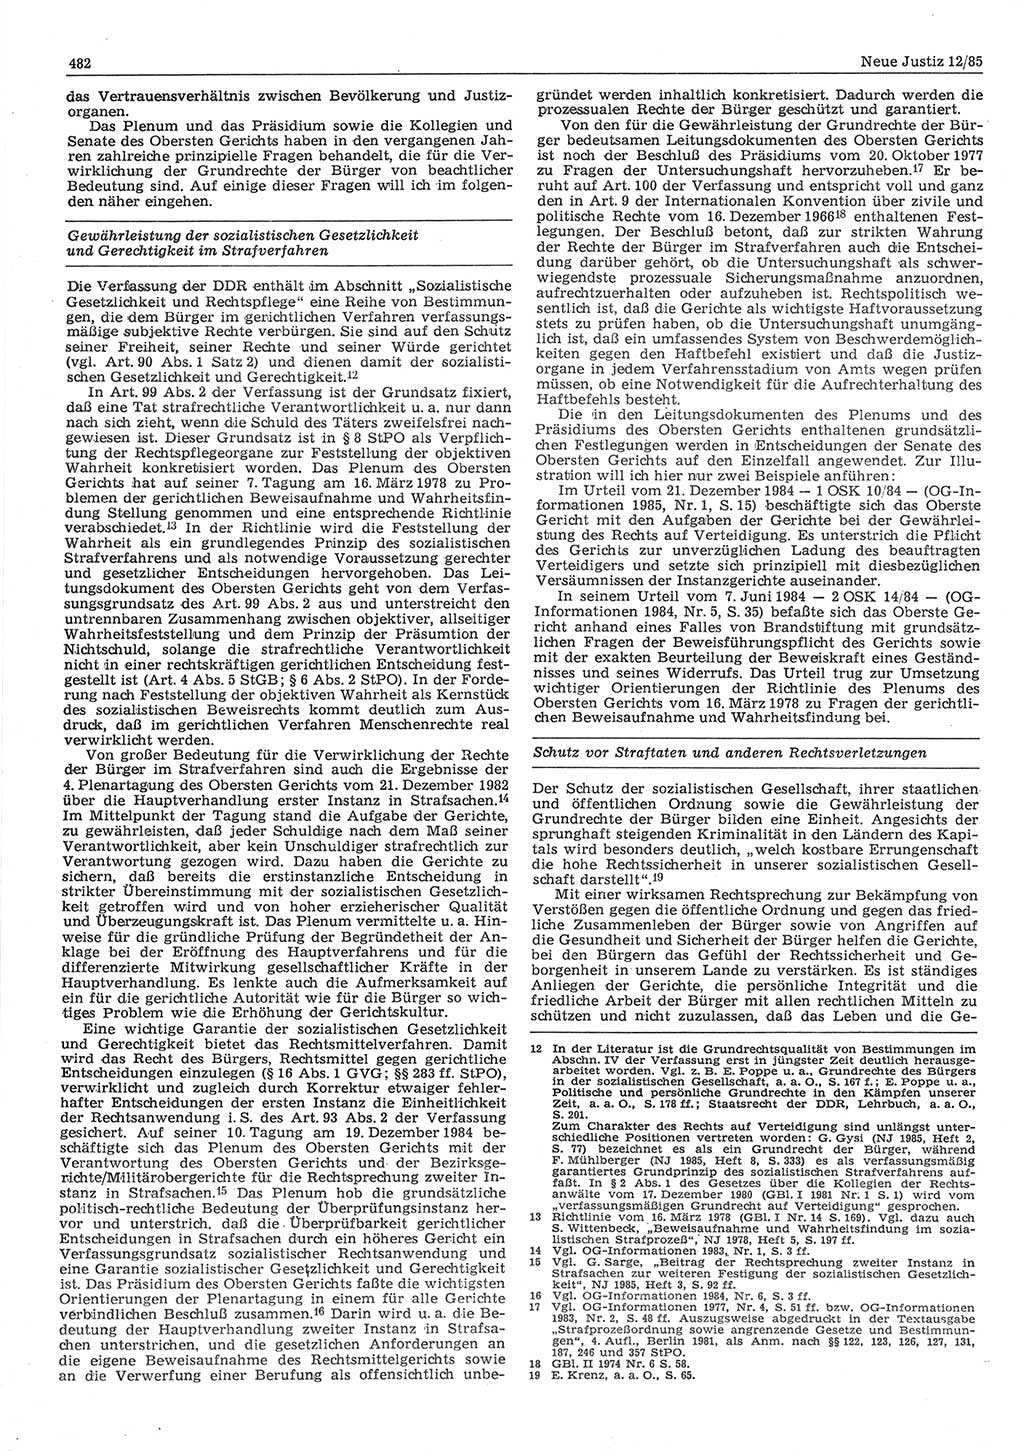 Neue Justiz (NJ), Zeitschrift für sozialistisches Recht und Gesetzlichkeit [Deutsche Demokratische Republik (DDR)], 39. Jahrgang 1985, Seite 482 (NJ DDR 1985, S. 482)